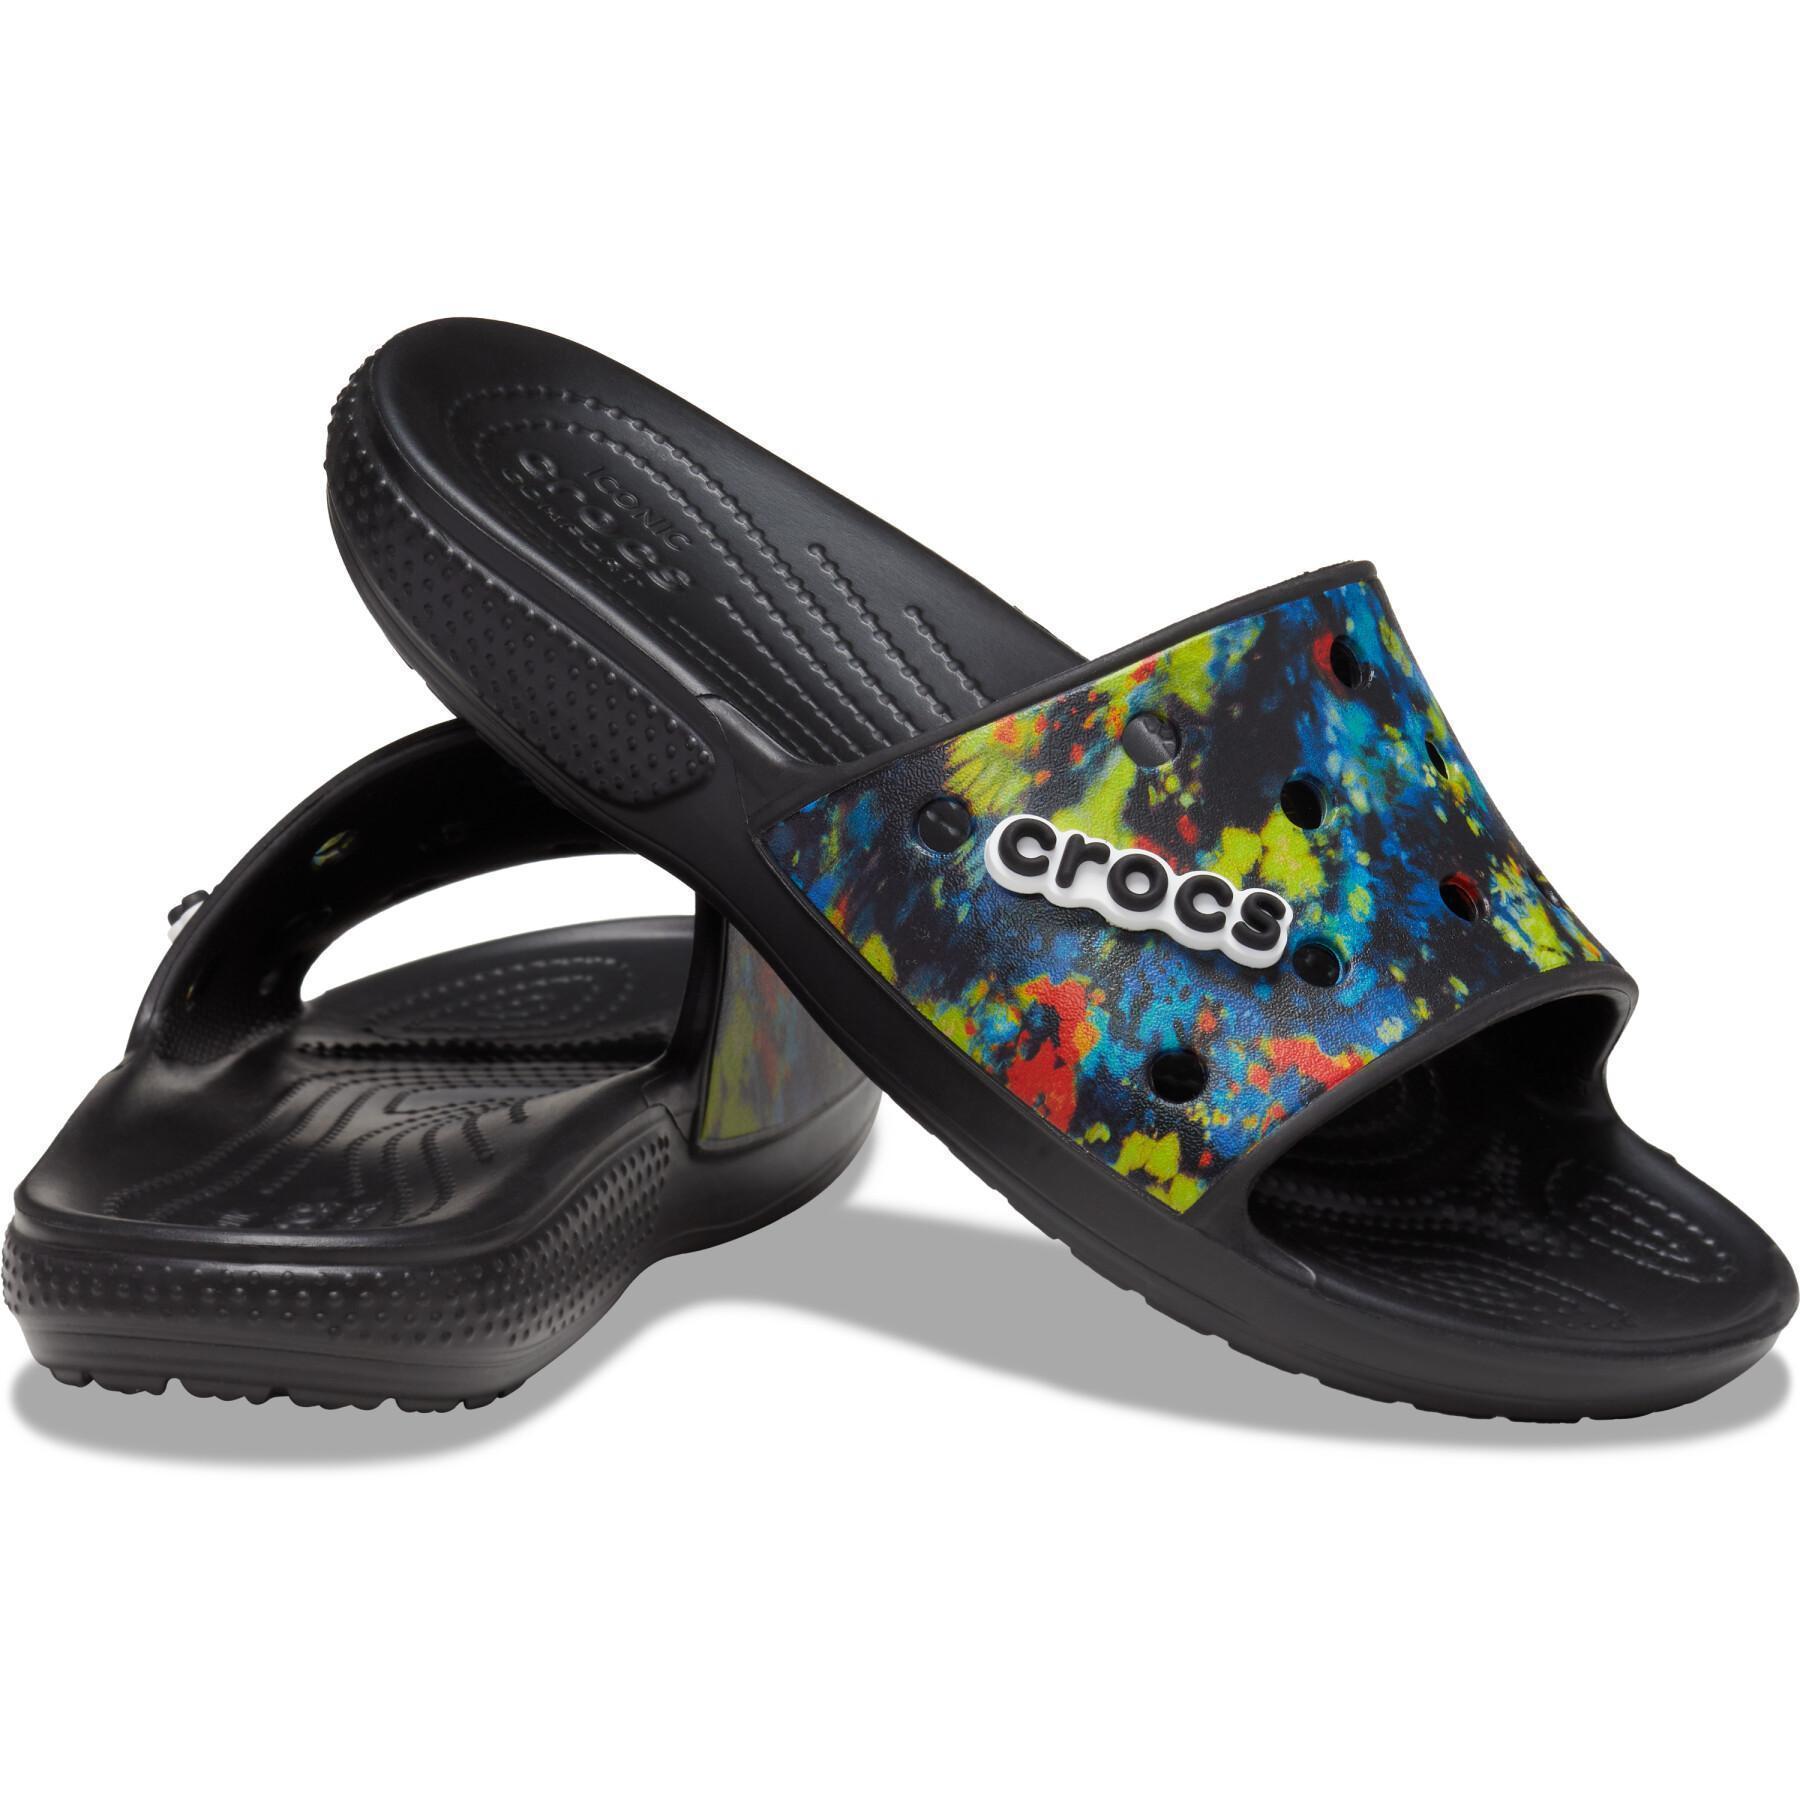 Zapatos de claqué Crocs classic tiedye grphc sld